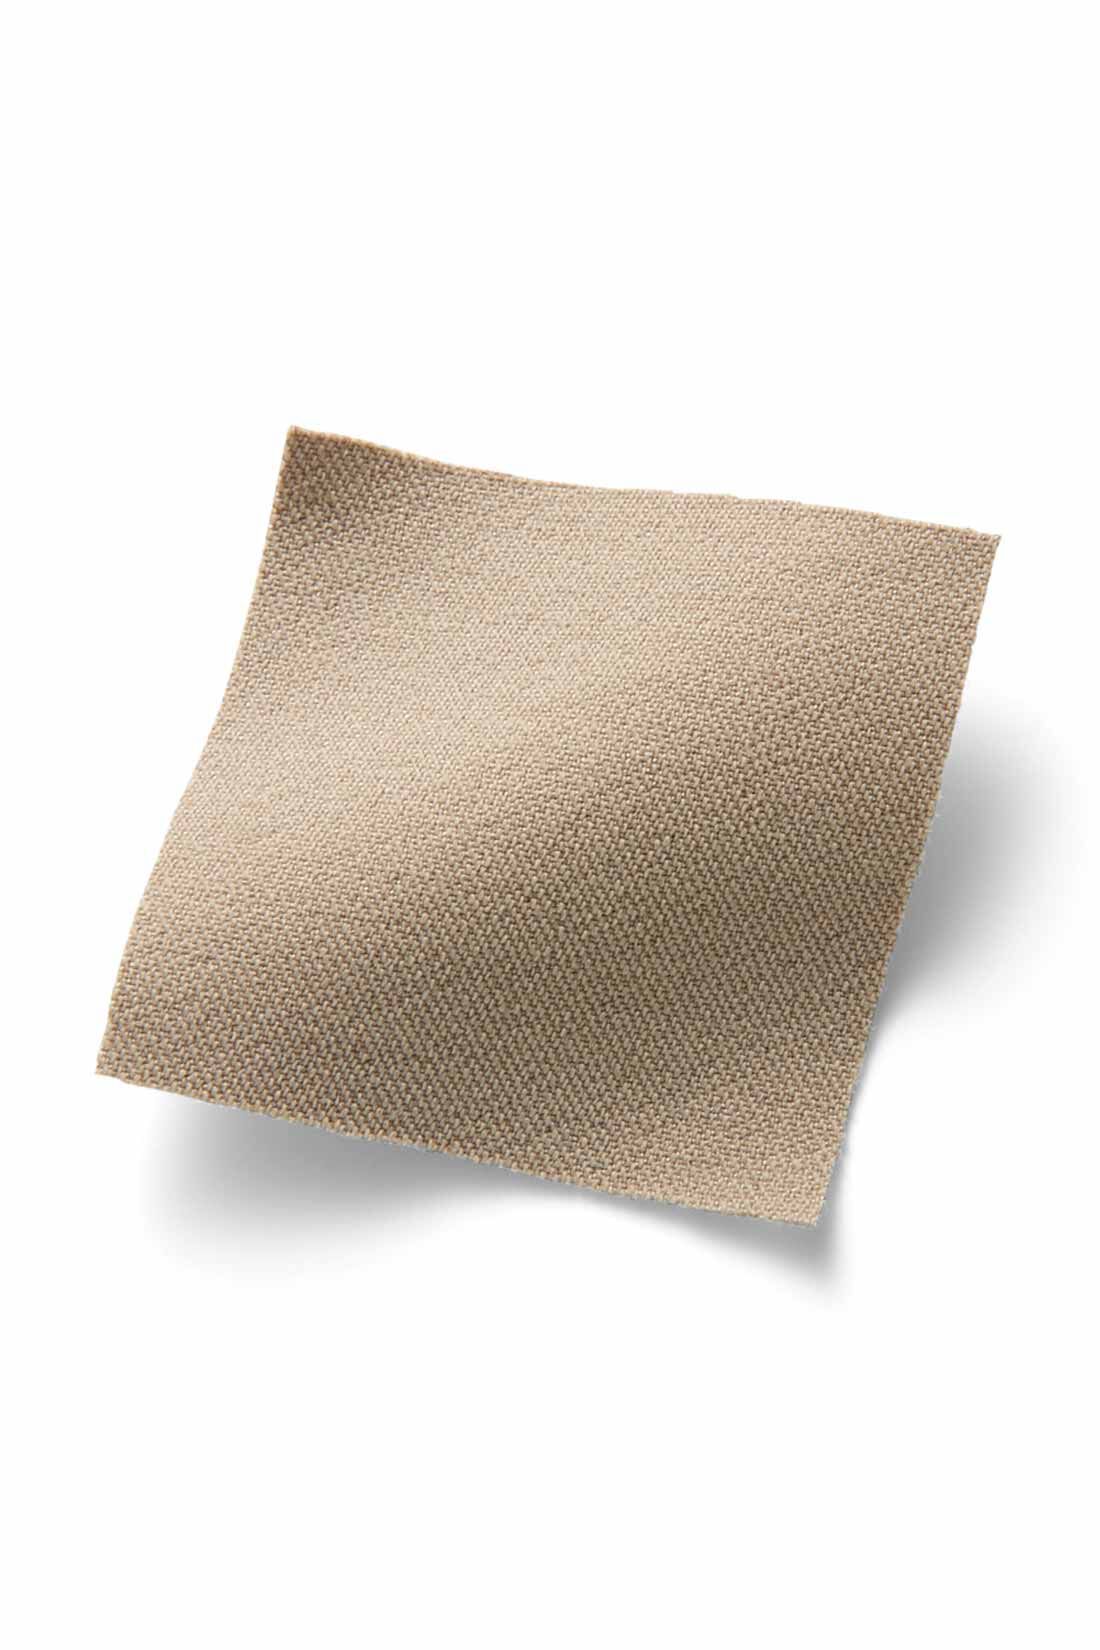 IEDIT[イディット]　ぐいっとしなやか すらりと美脚！ ストレッチ布はく素材のエアノビテーパードパンツ〈ネイビー〉|ストレッチ素材ながら綿のようなマットな表面感が品よくきれい。脚のラインを拾いにくい厚みと張り感で高見えします。